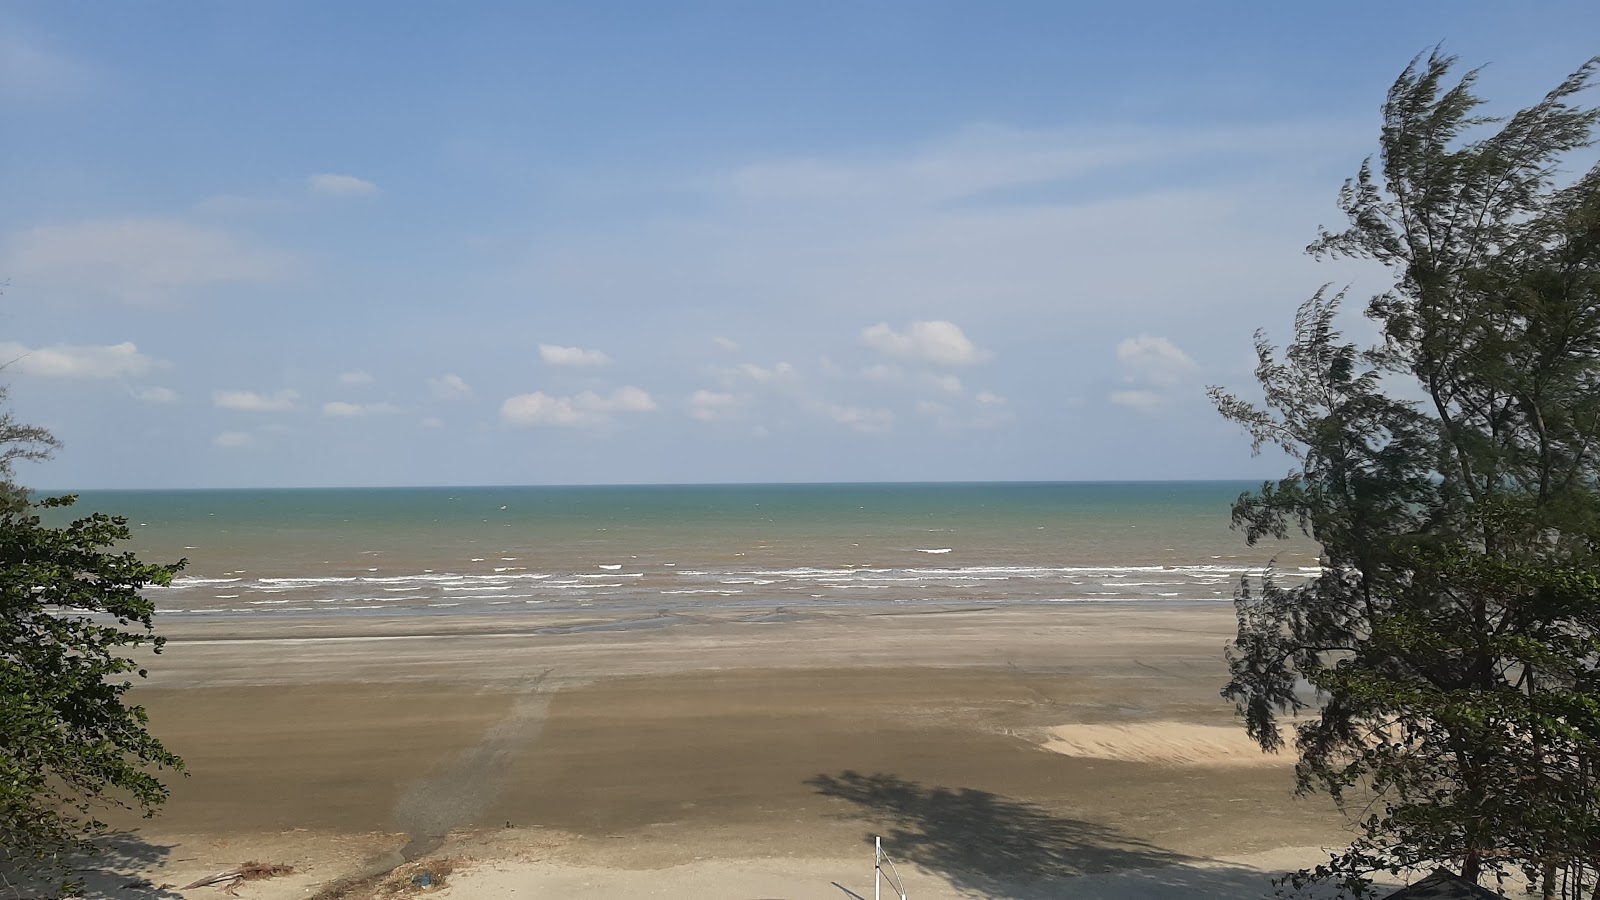 Zdjęcie Batu Hitam Mandurah Beach - popularne miejsce wśród znawców relaksu